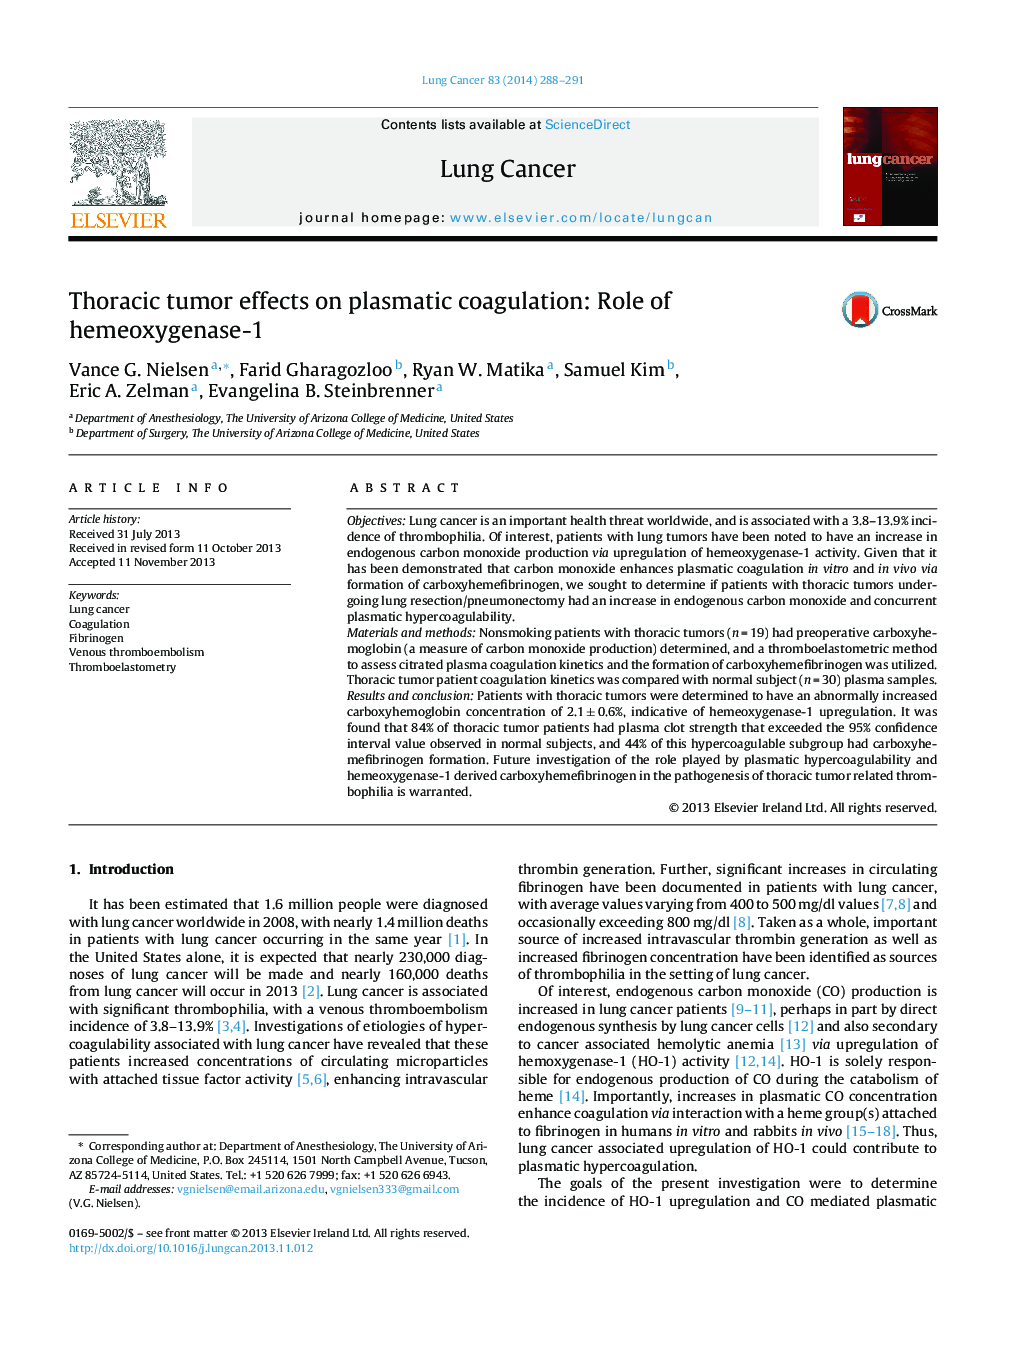 Thoracic tumor effects on plasmatic coagulation: Role of hemeoxygenase-1